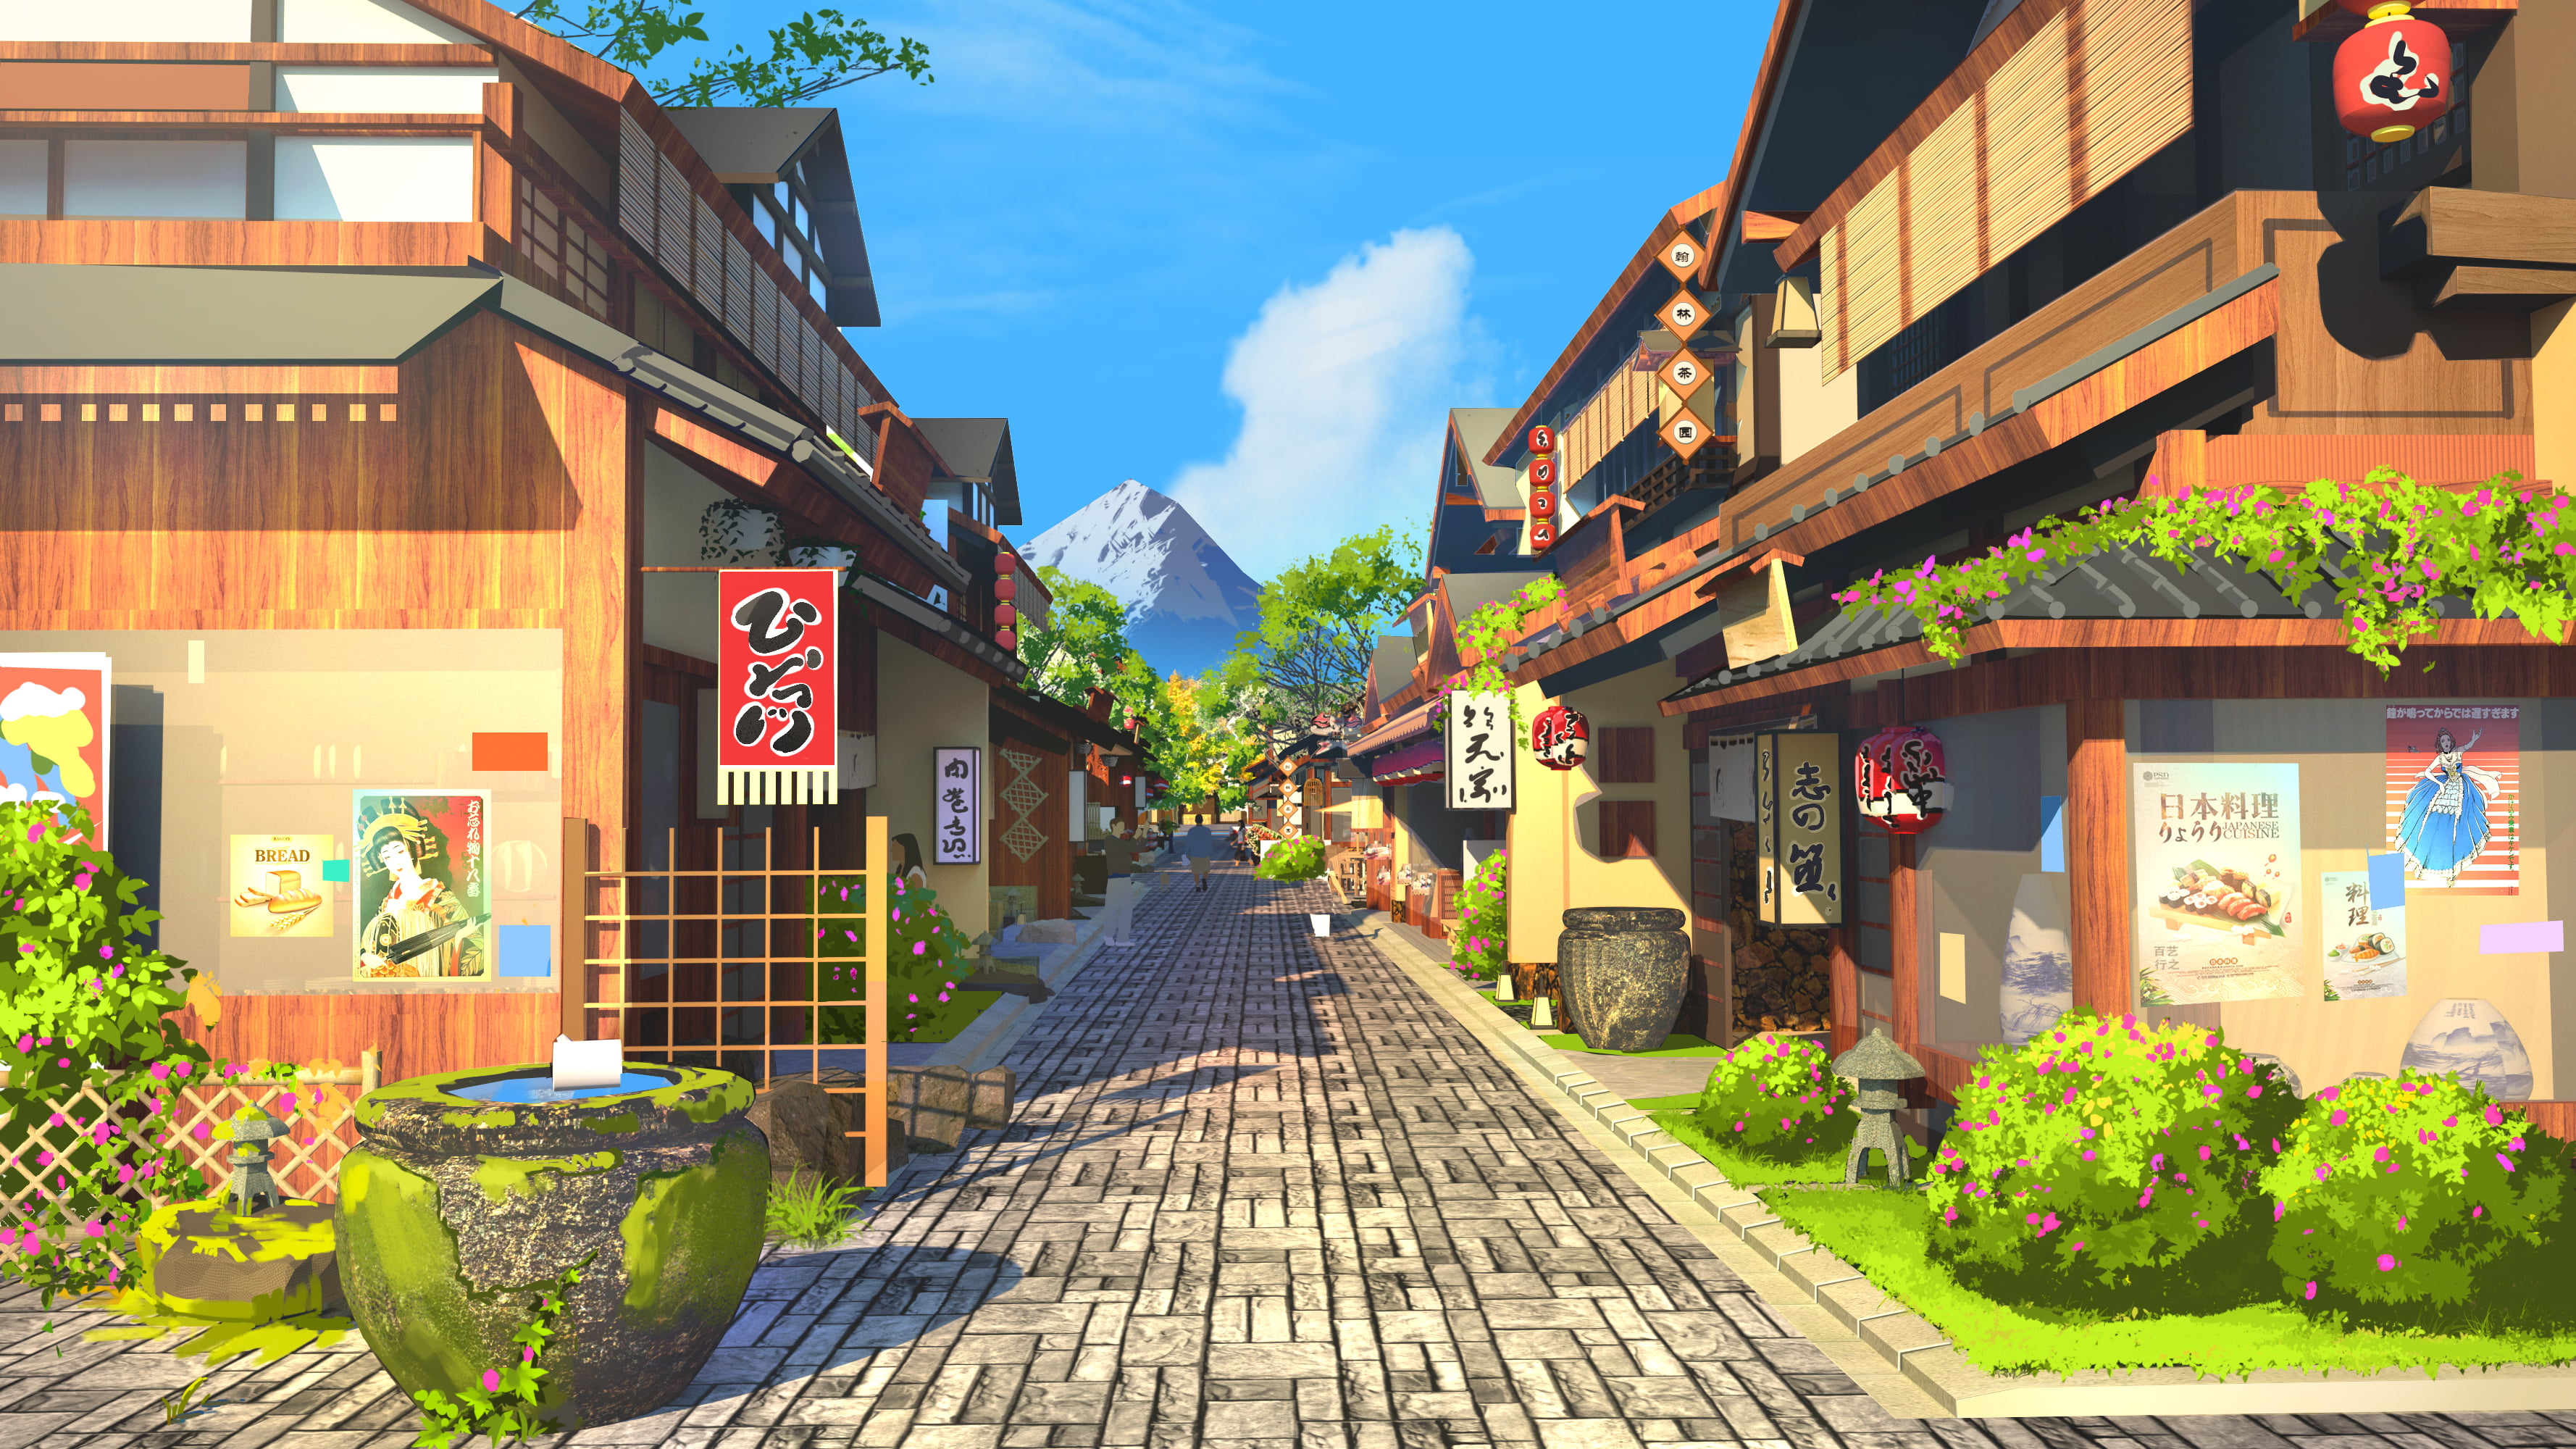 行之LV, Touhou, Game CG, Background Art, sky, clouds, street